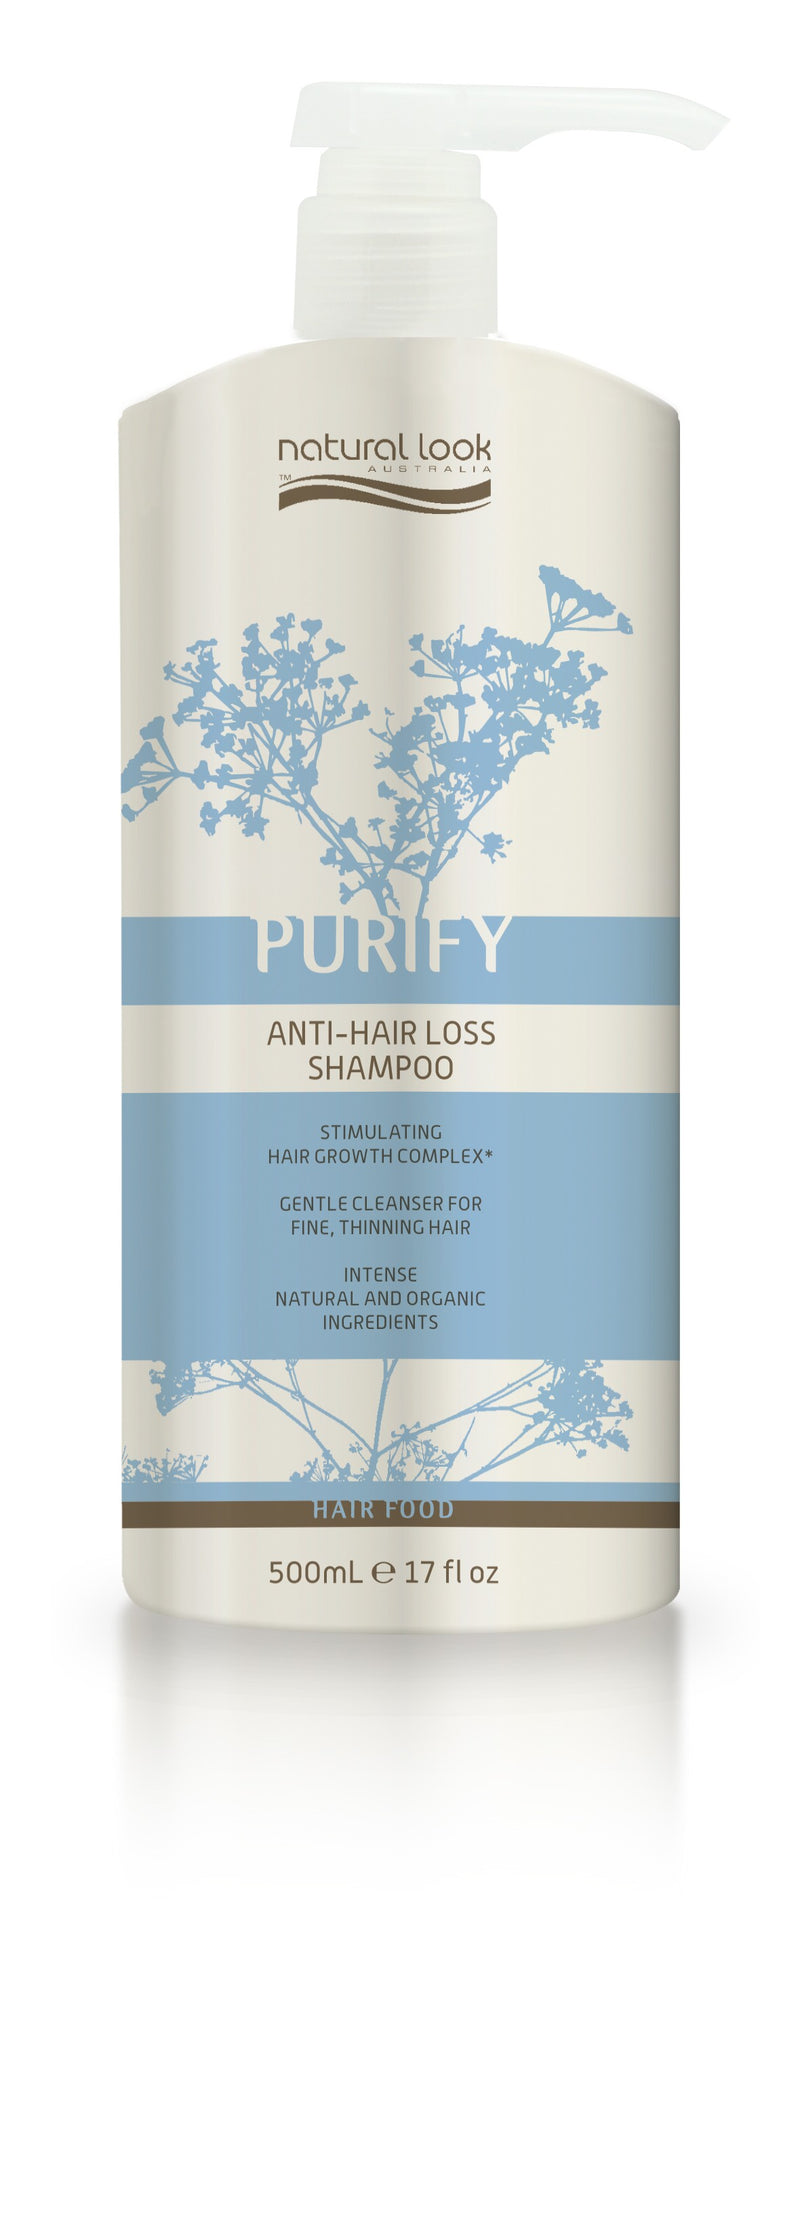 Natural Look Purify Anti-Hair Loss Shampoo 500ml